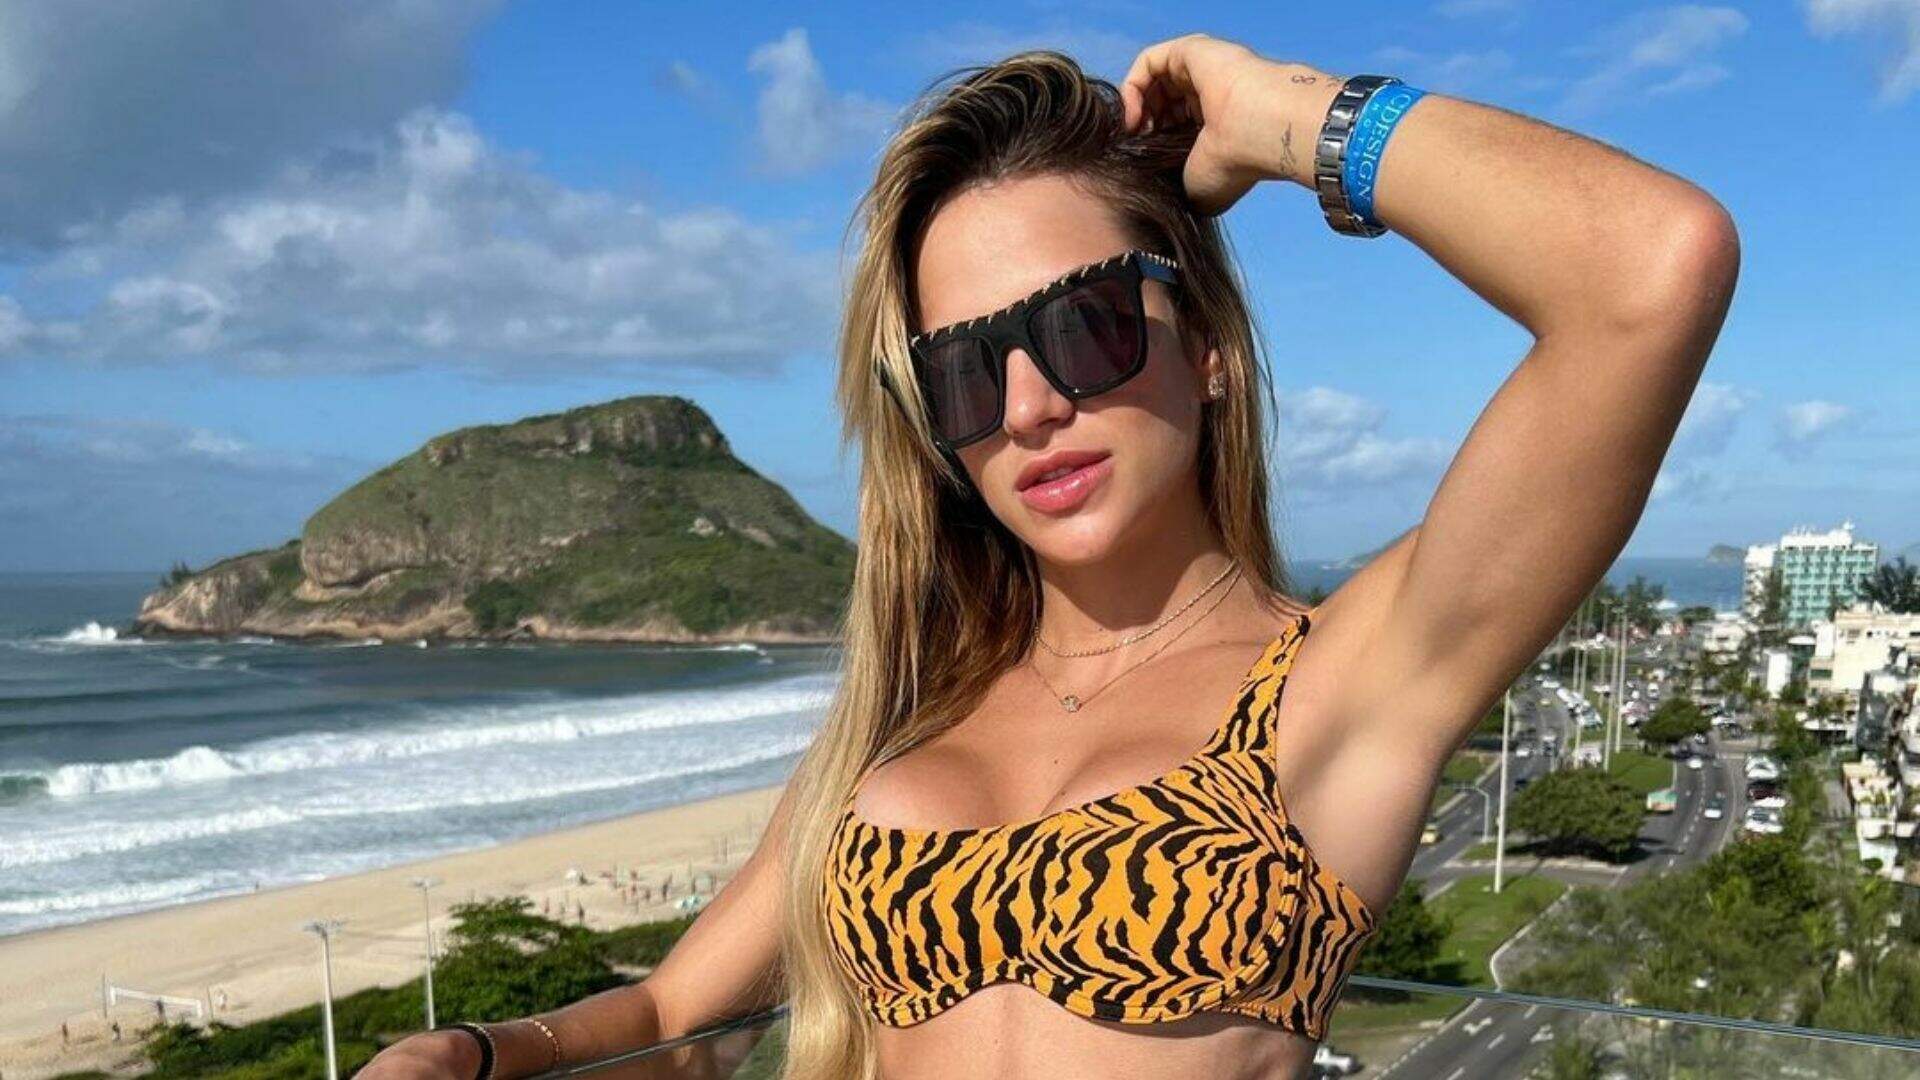 Com modelito de oncinha, Gabi Martins aproveita piscina no Rio de Janeiro: “Saudade”